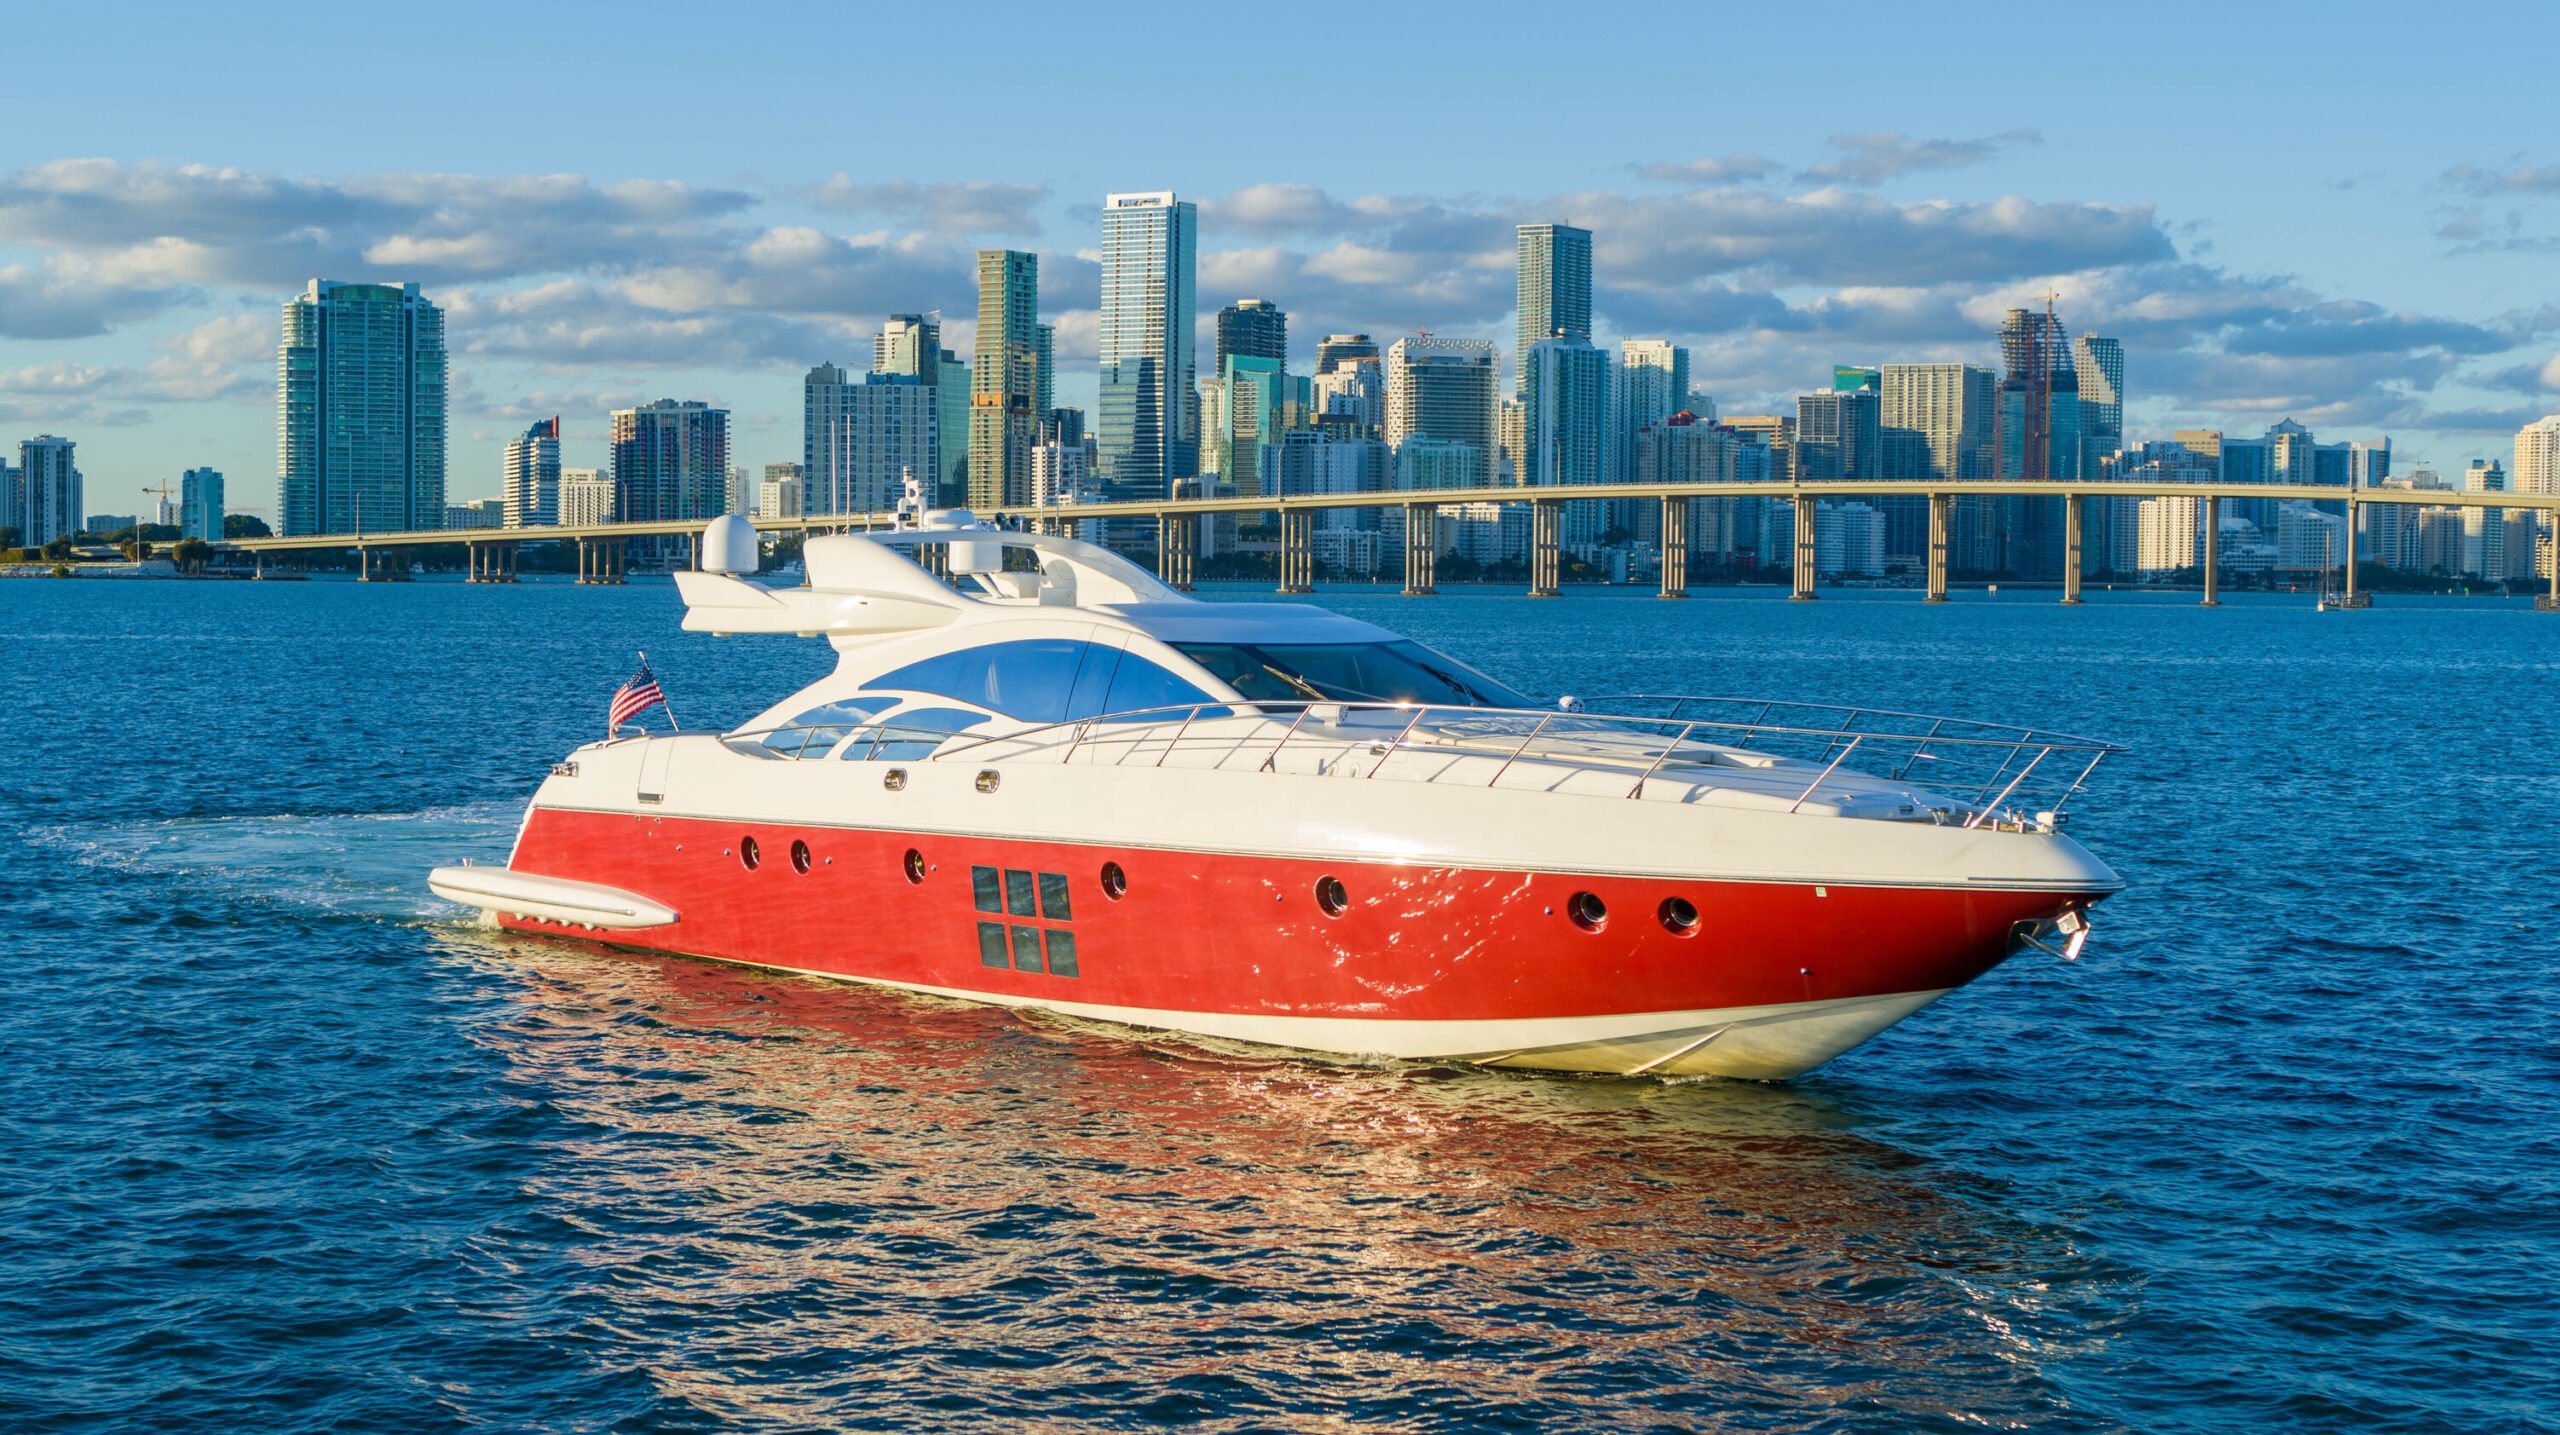 azimut miami - amazing yachts